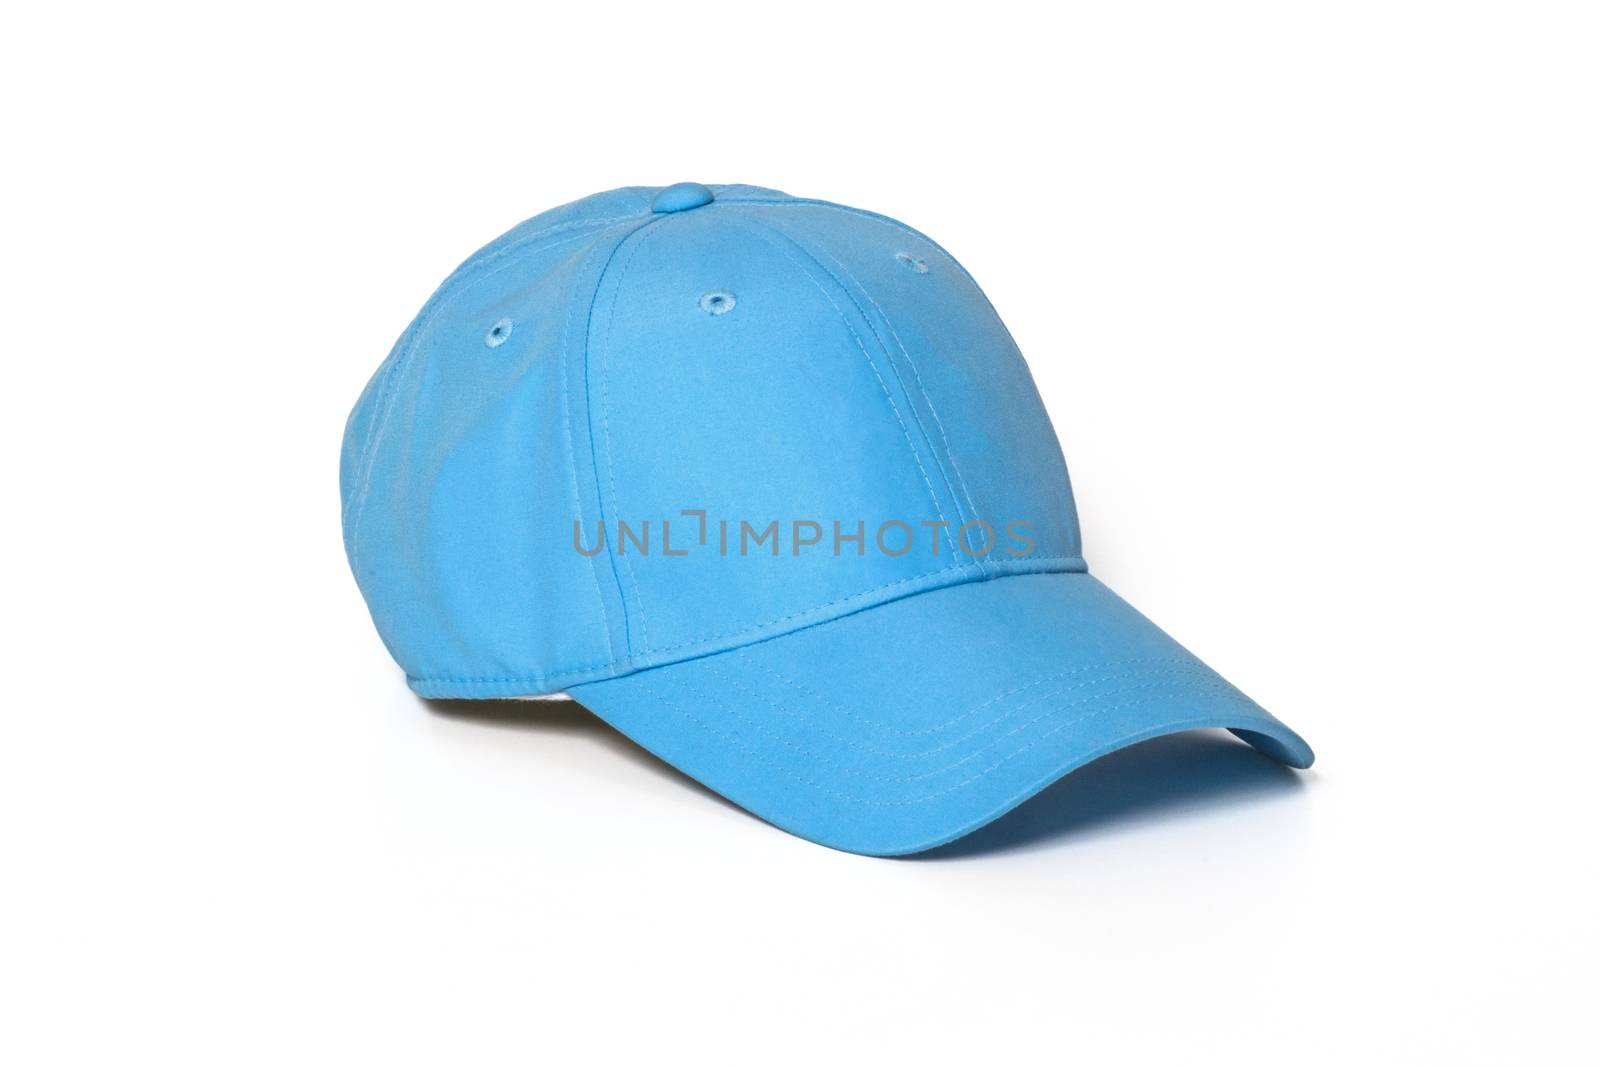 Light blue adult golf or baseball cap on white background